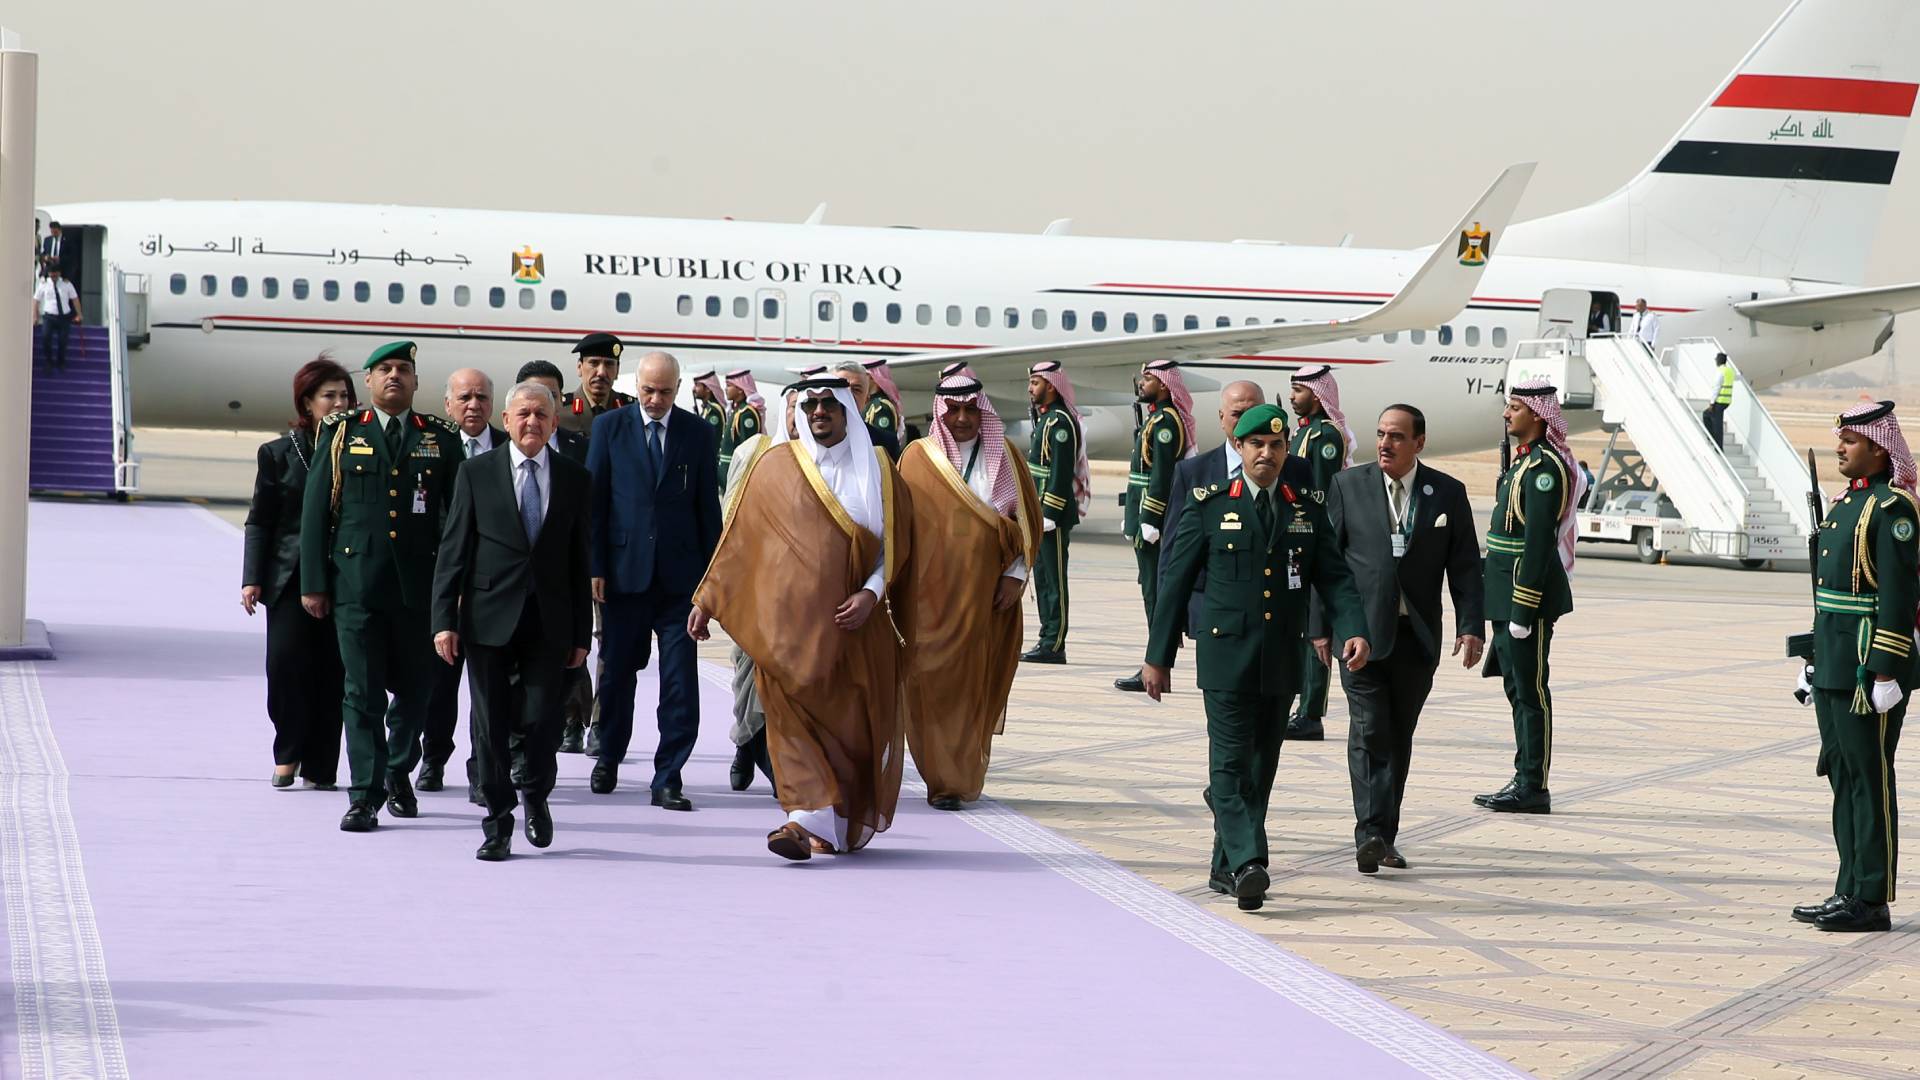 Iraqi President arrived in Riyadh on Saturday 